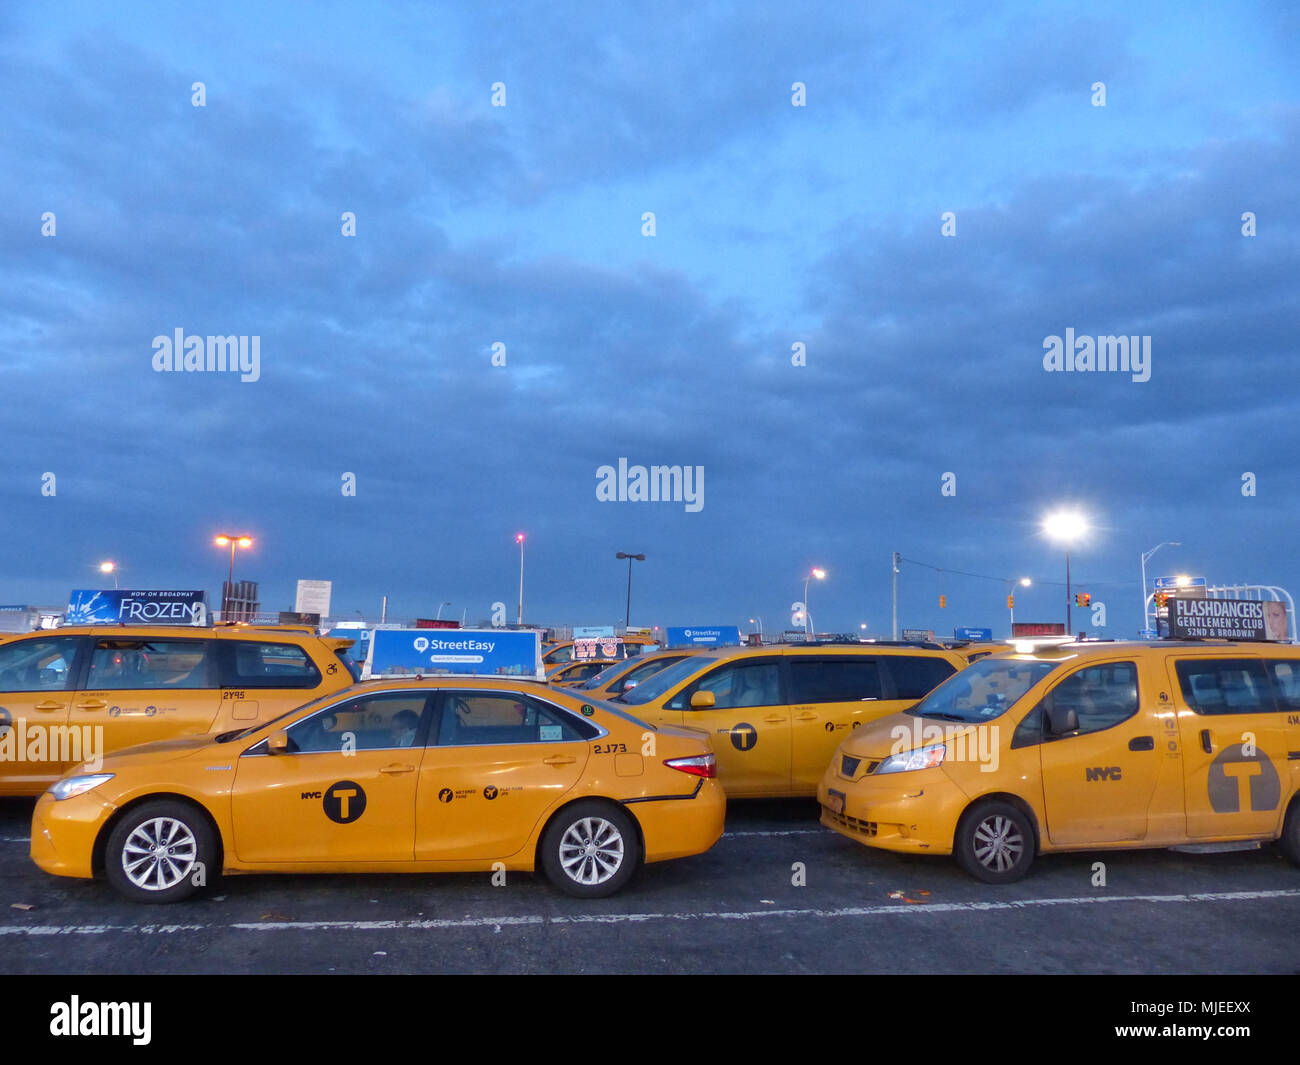 Yellowcabs von NYC Taxi & Limousine Kommission, Warten am Flughafen JFK Zentrale Taxi halten, bis sie an der Reihe sind, Fluggäste zu holen lizenziert Stockfoto